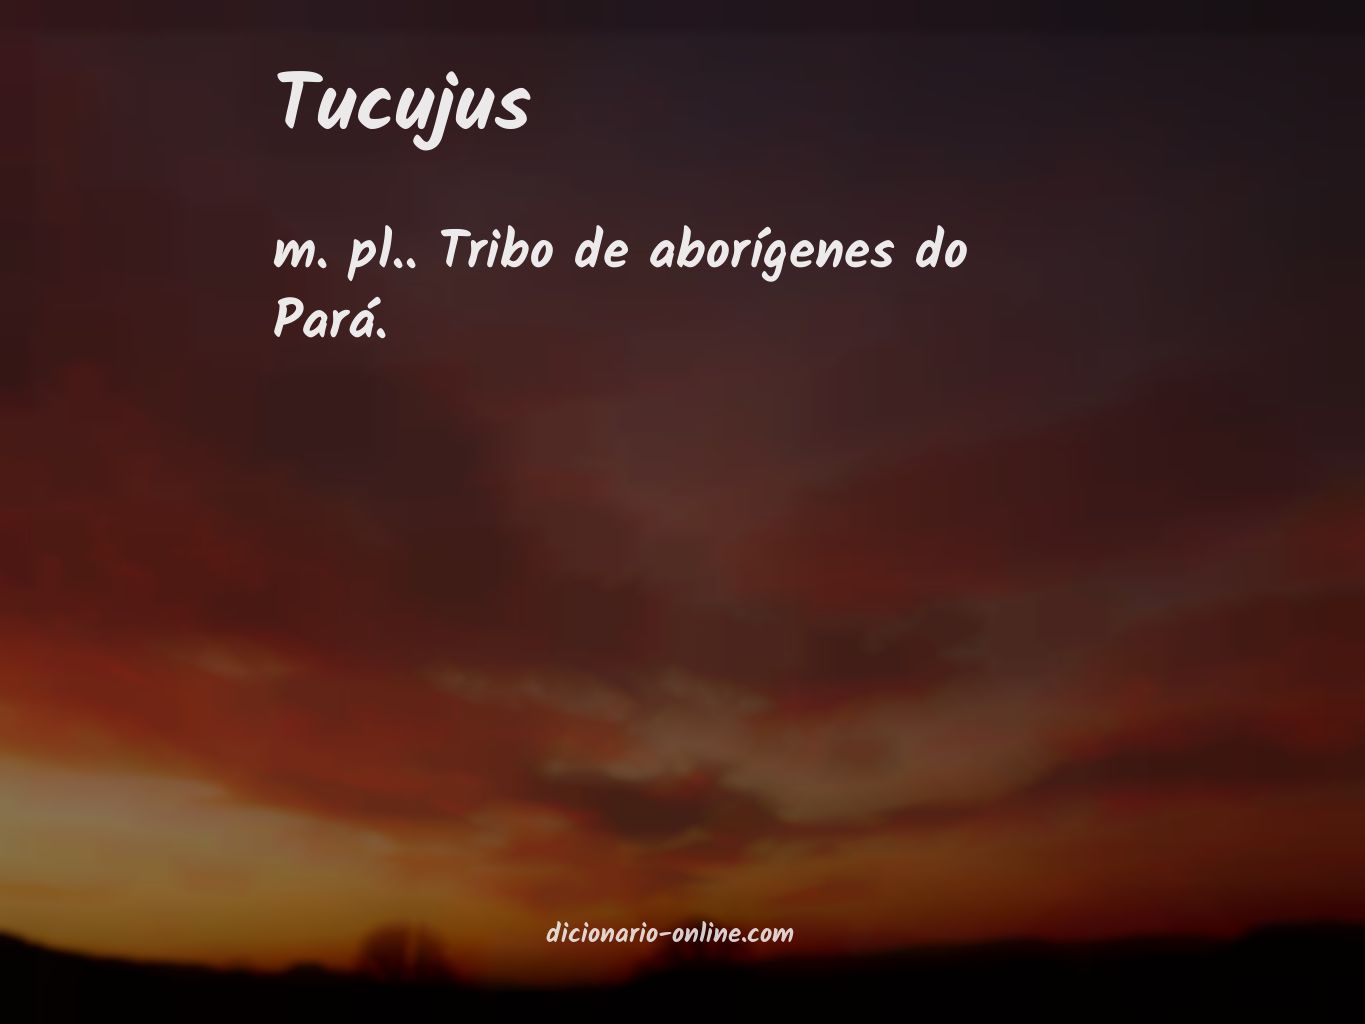 Significado de tucujus